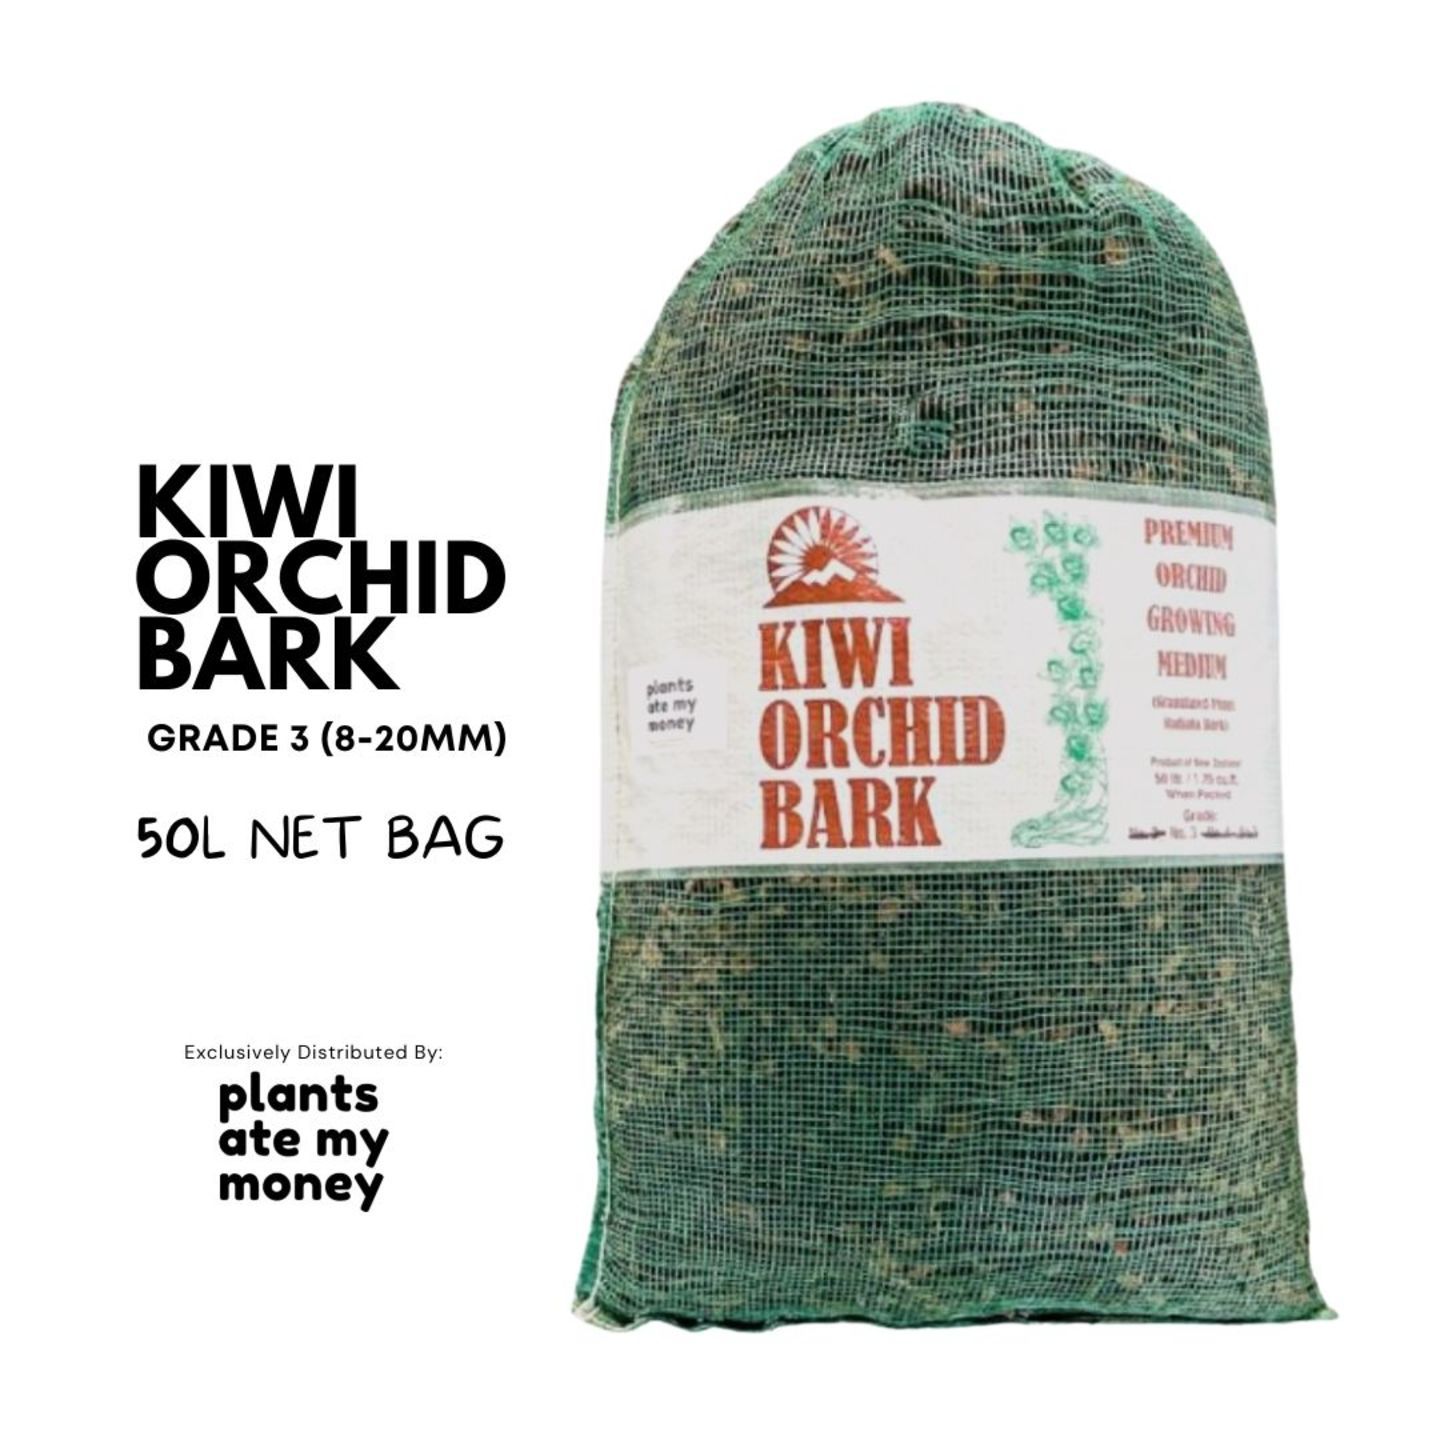 Kiwi Orchid Bark Grade 3 50L